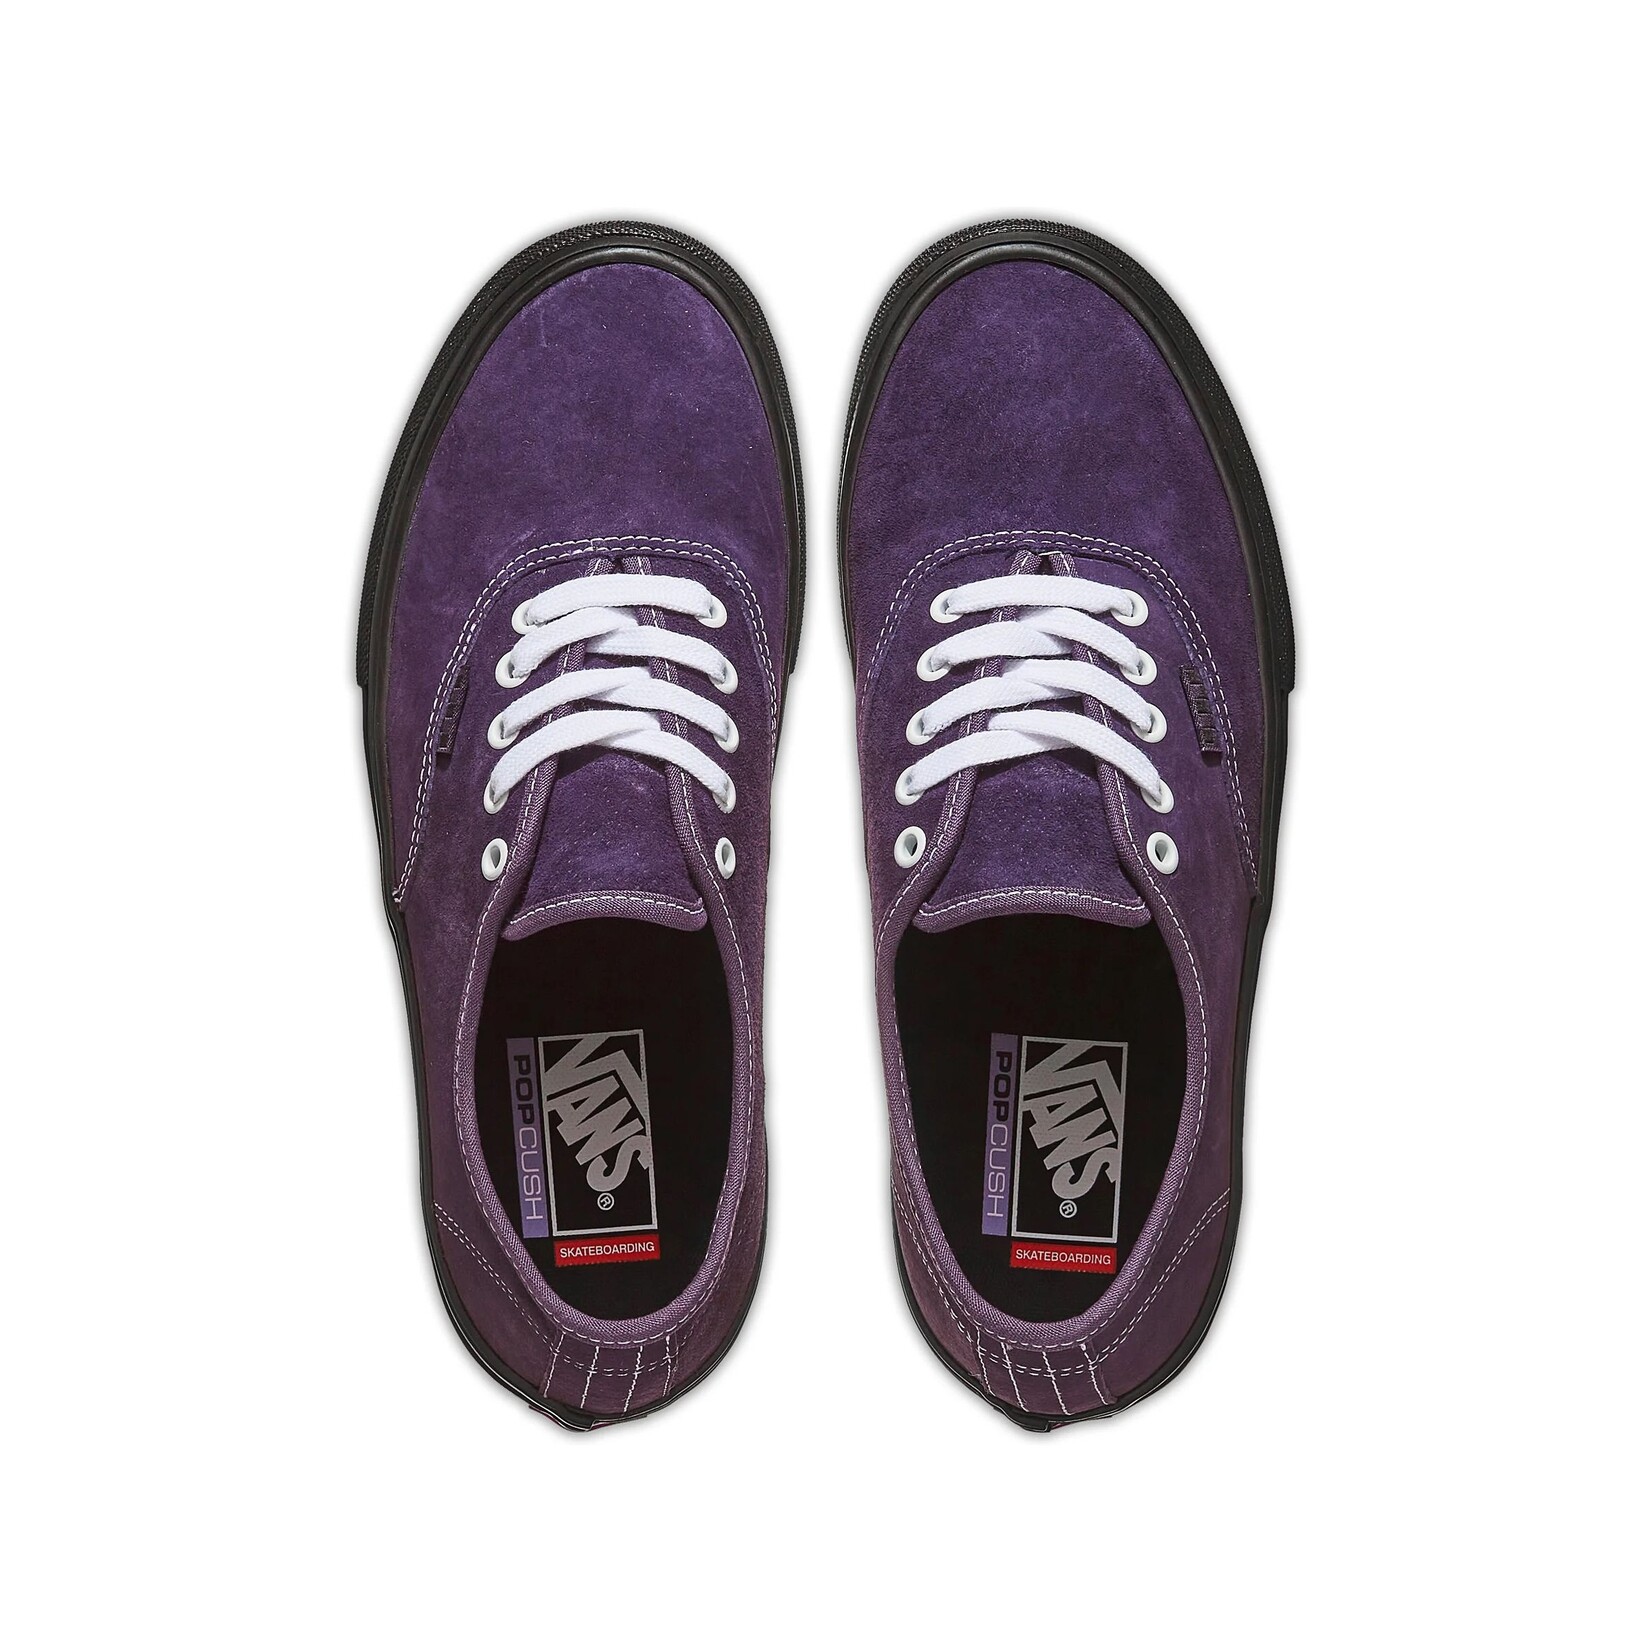 Vans Vans Authentic Pig Suede Skate Shoes- Dark Purple/Black